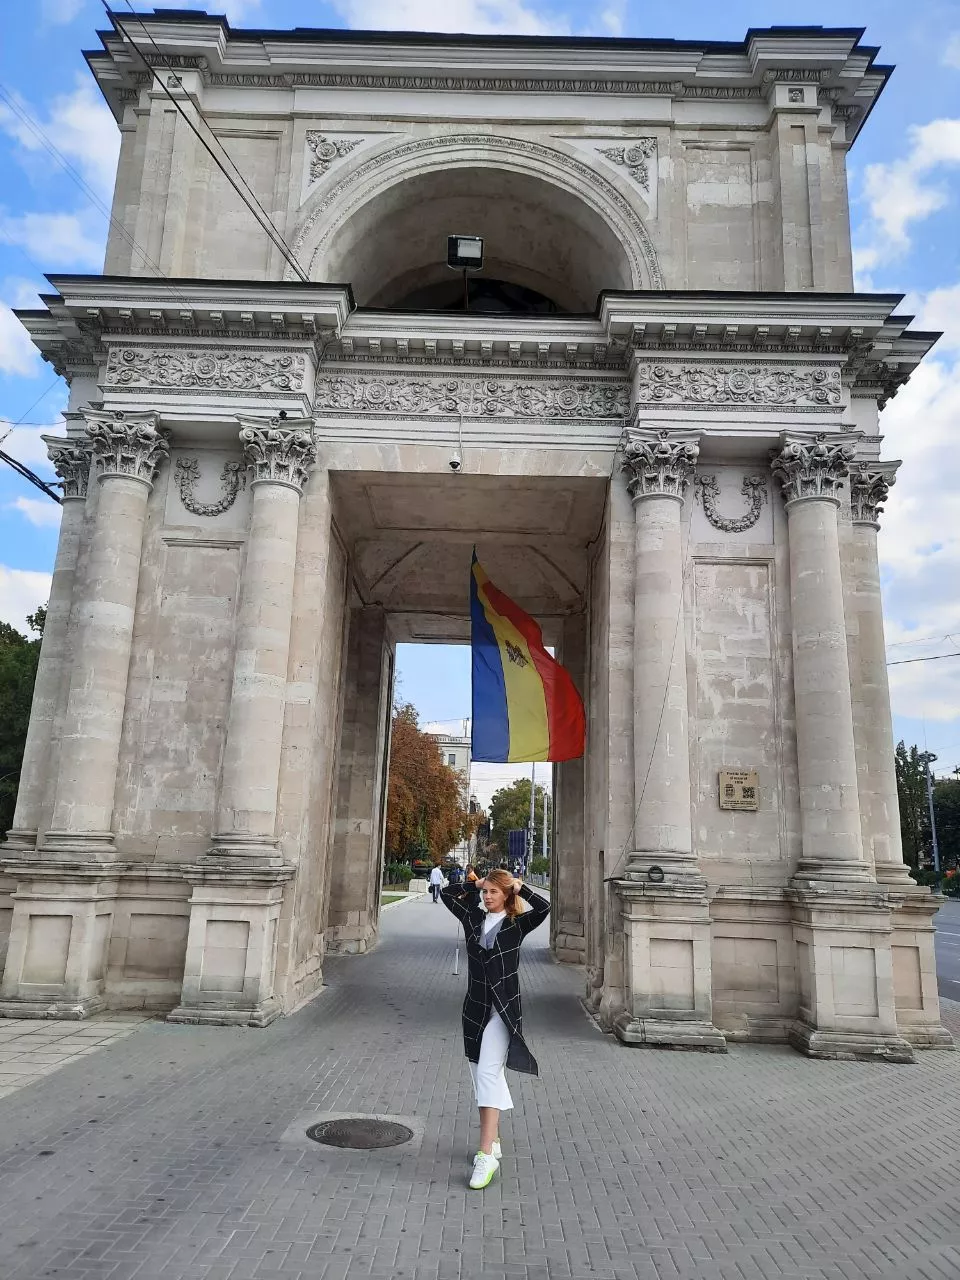 Триумфальная арка является частью площади и сквера Кафедрального собора